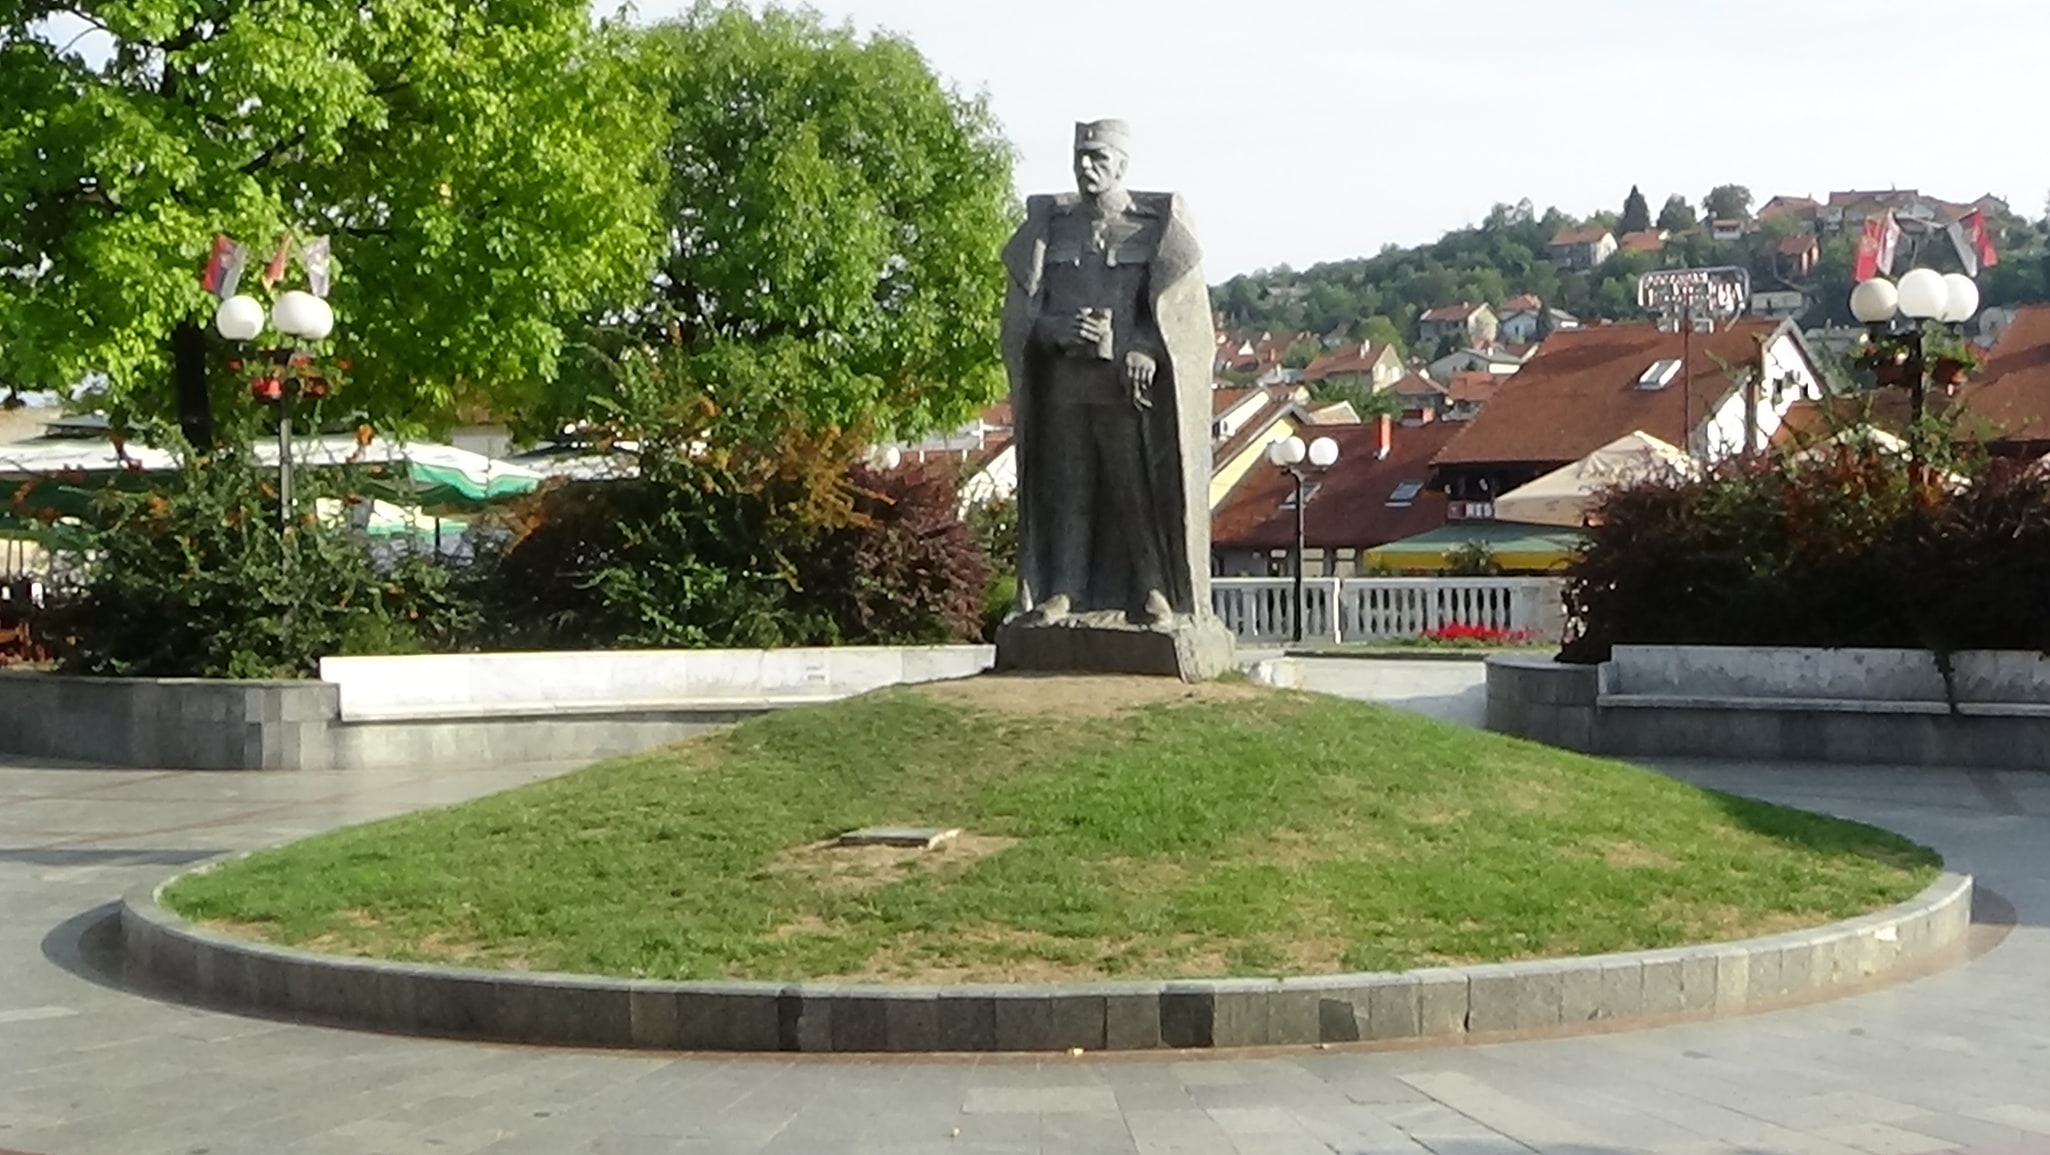 Valjevo, Serbia